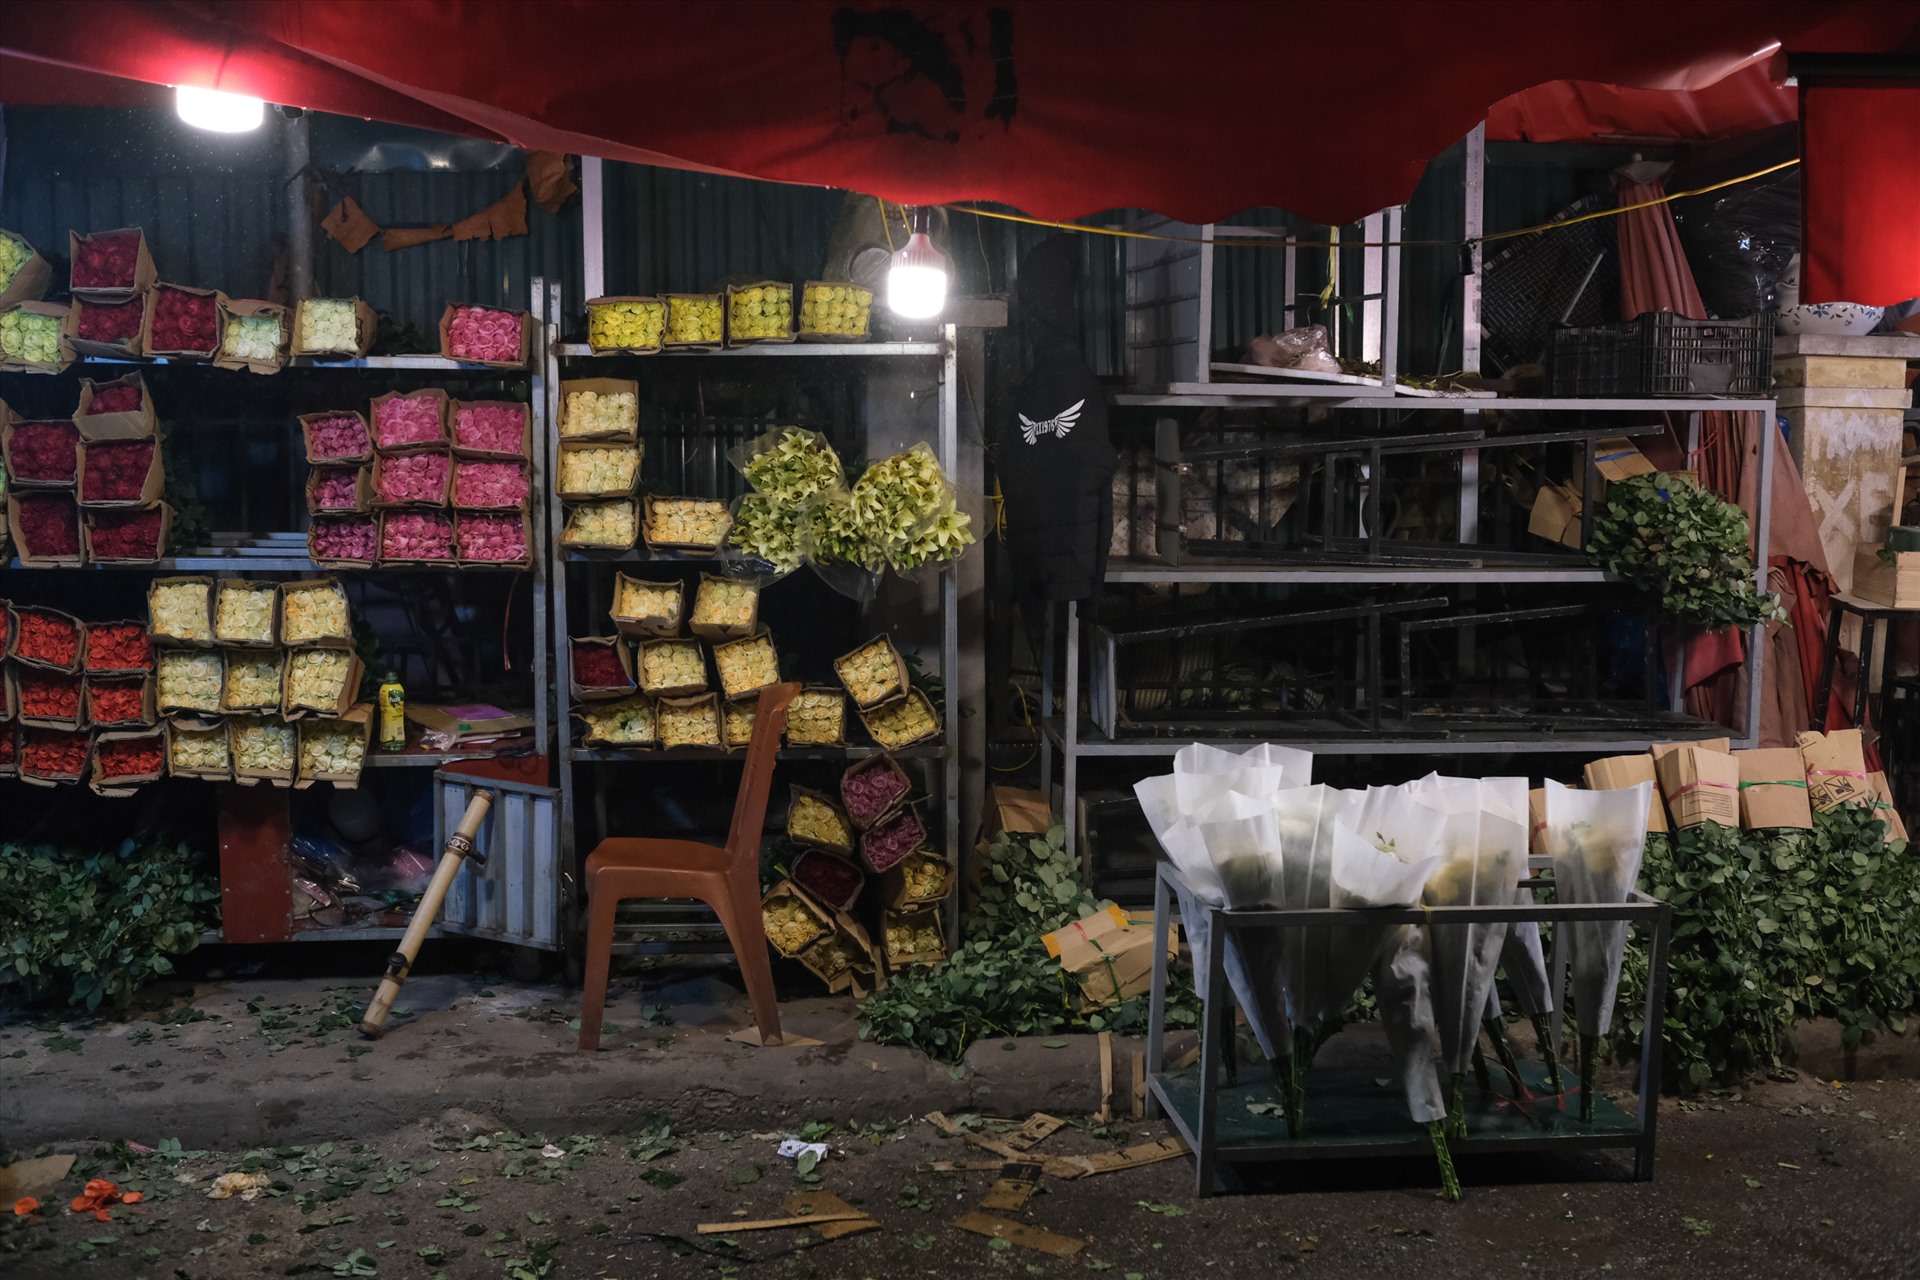 Tính tới thời điểm 3h sáng ngày 12.3, một số cửa hàng hoa đã đóng cửa, nghỉ không bán hàng, điều hiếm thấy ở chợ hoa này. Ảnh: Hoàng Việt